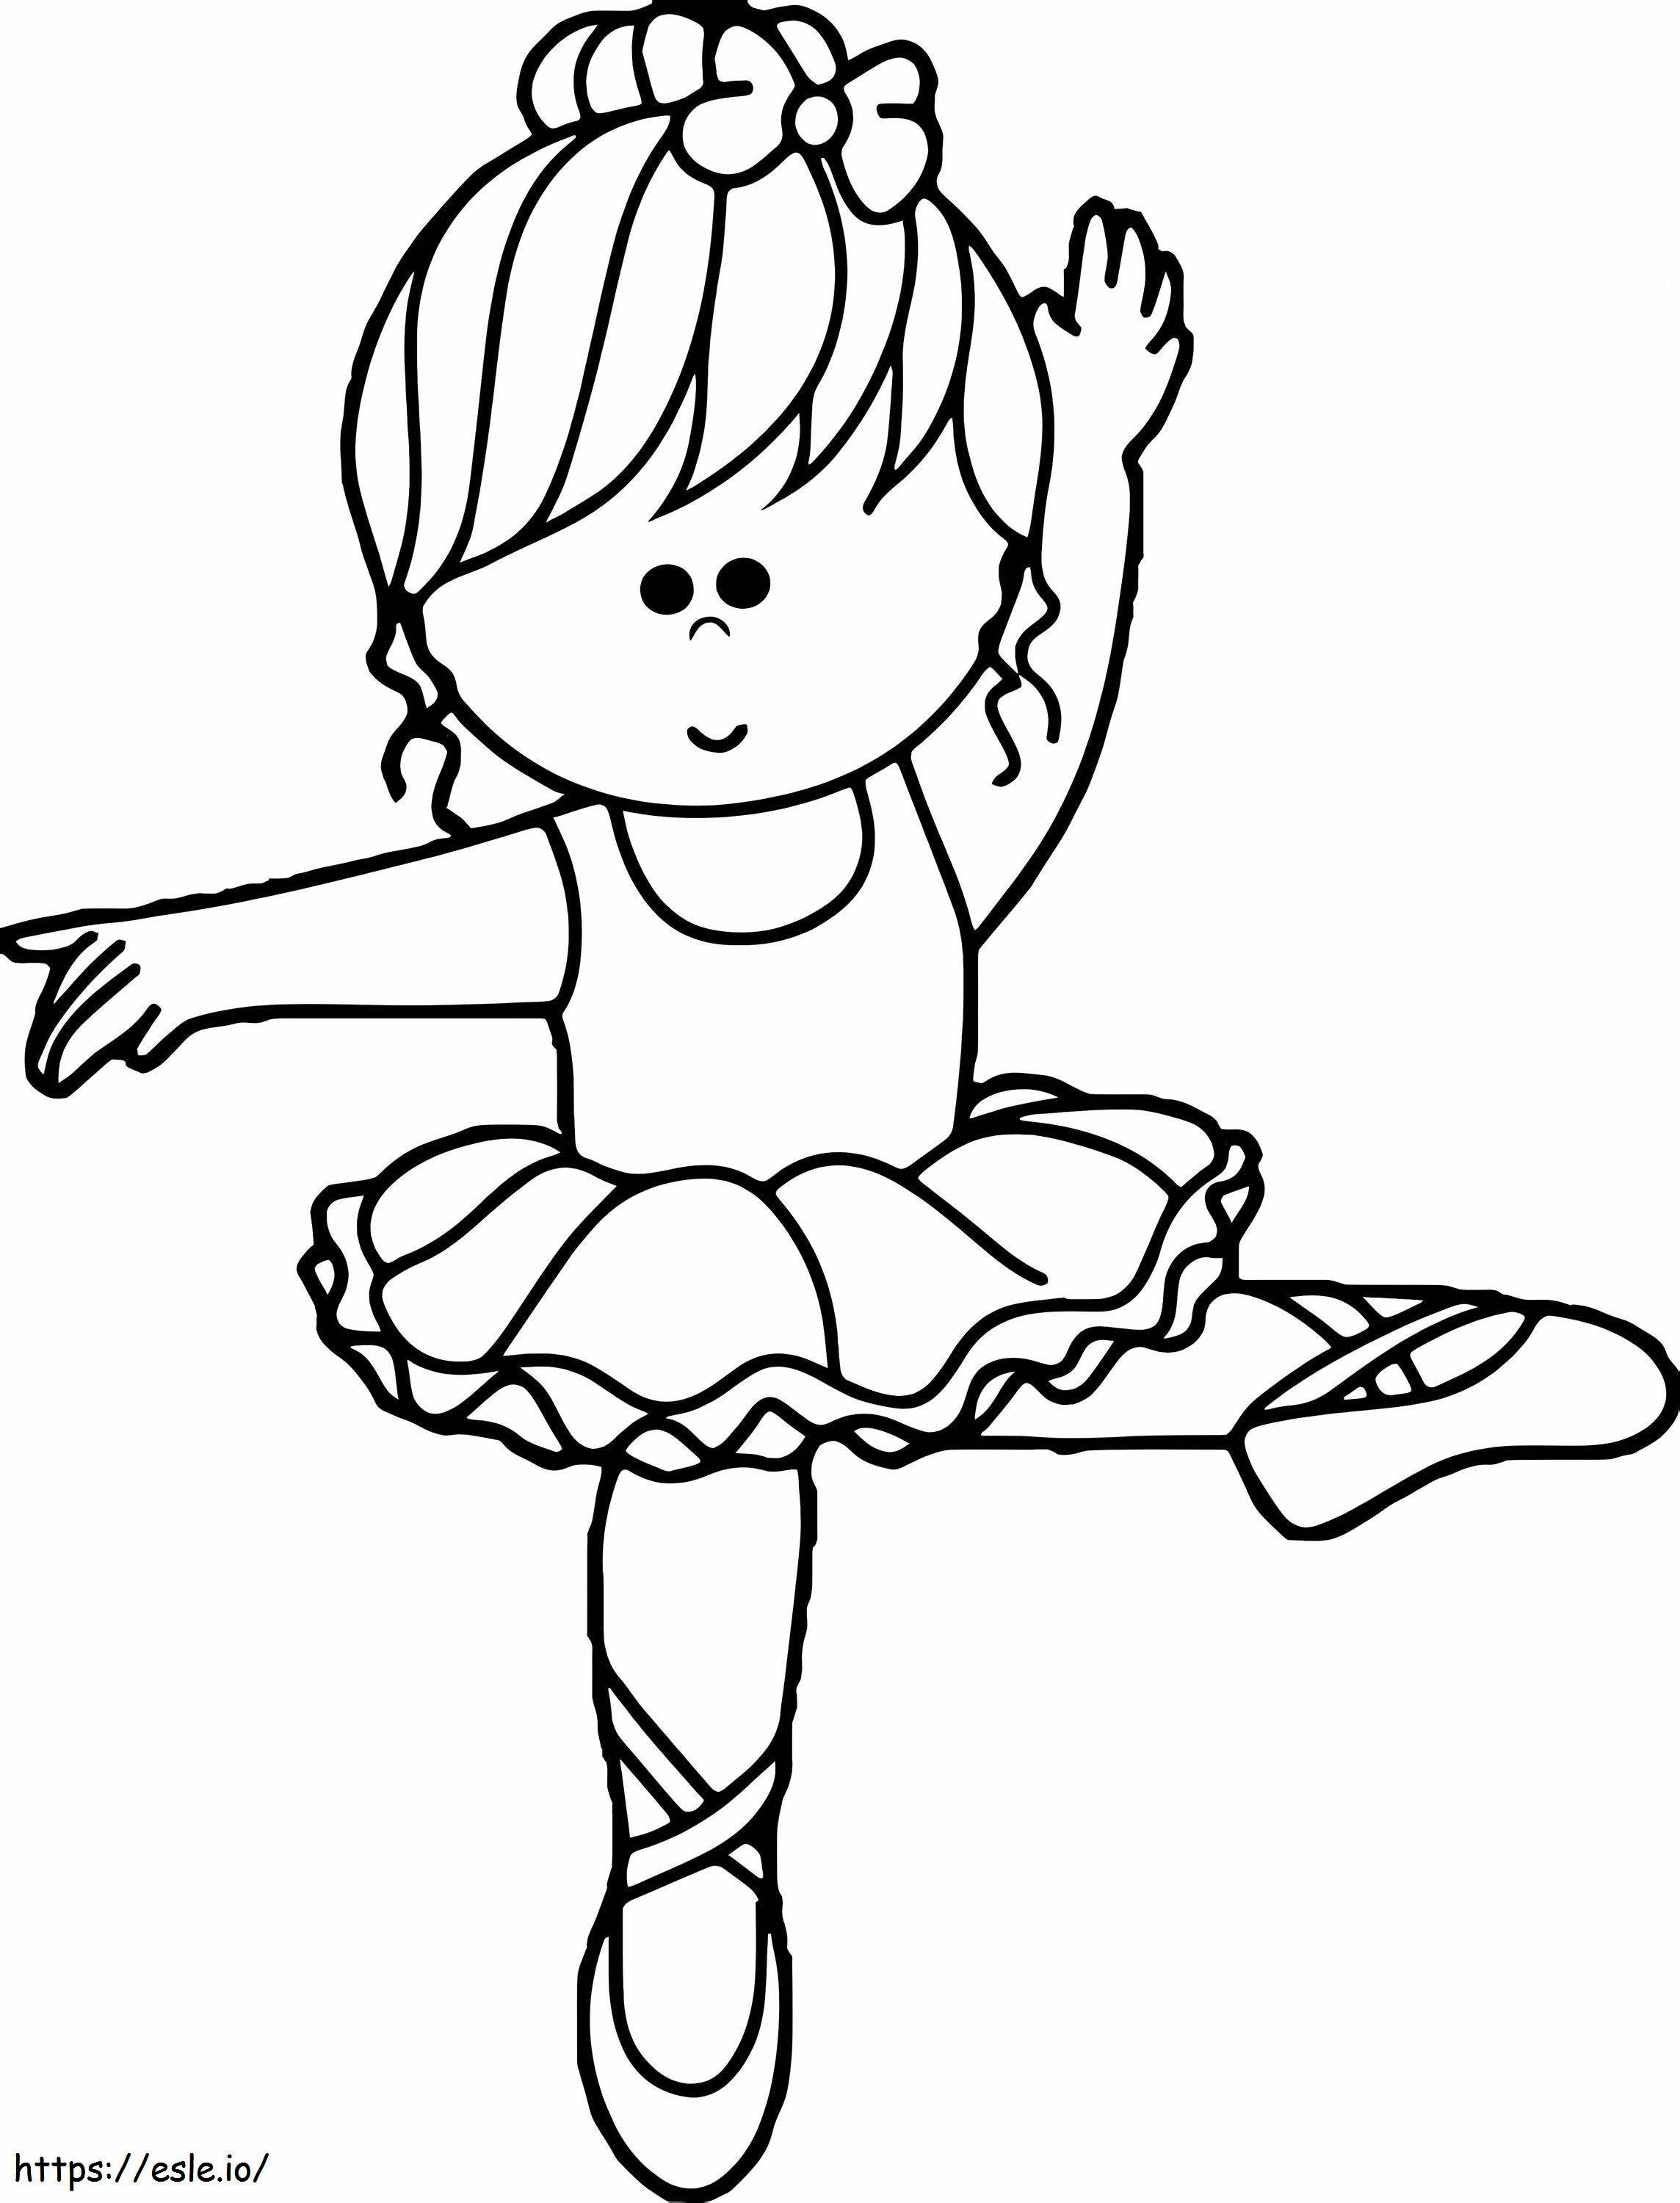 Cartoon Ballerina coloring page